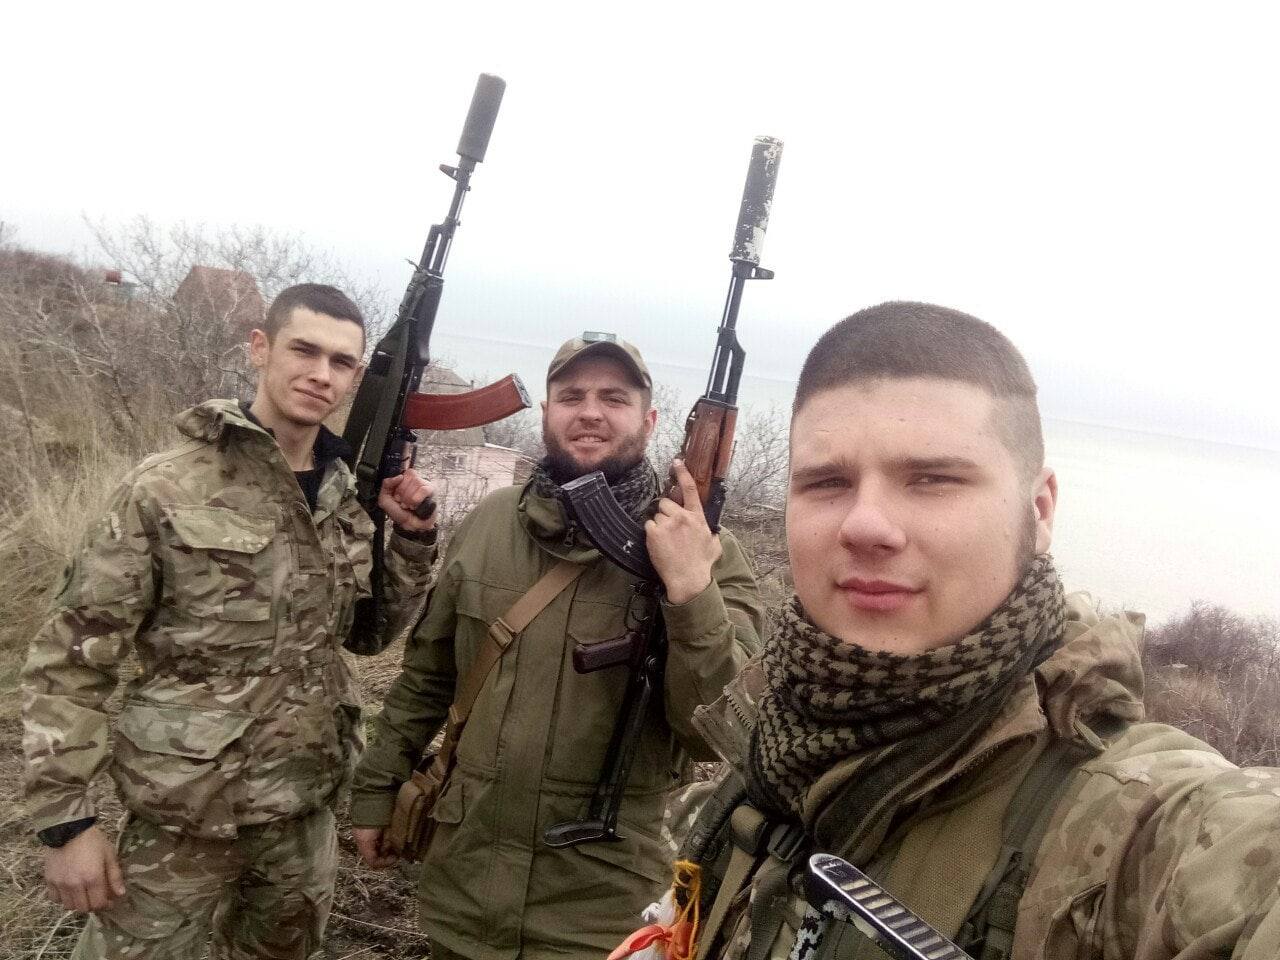 Кравцов в окружении бойцов. Фото © Телеграм-канал "НемеZида"